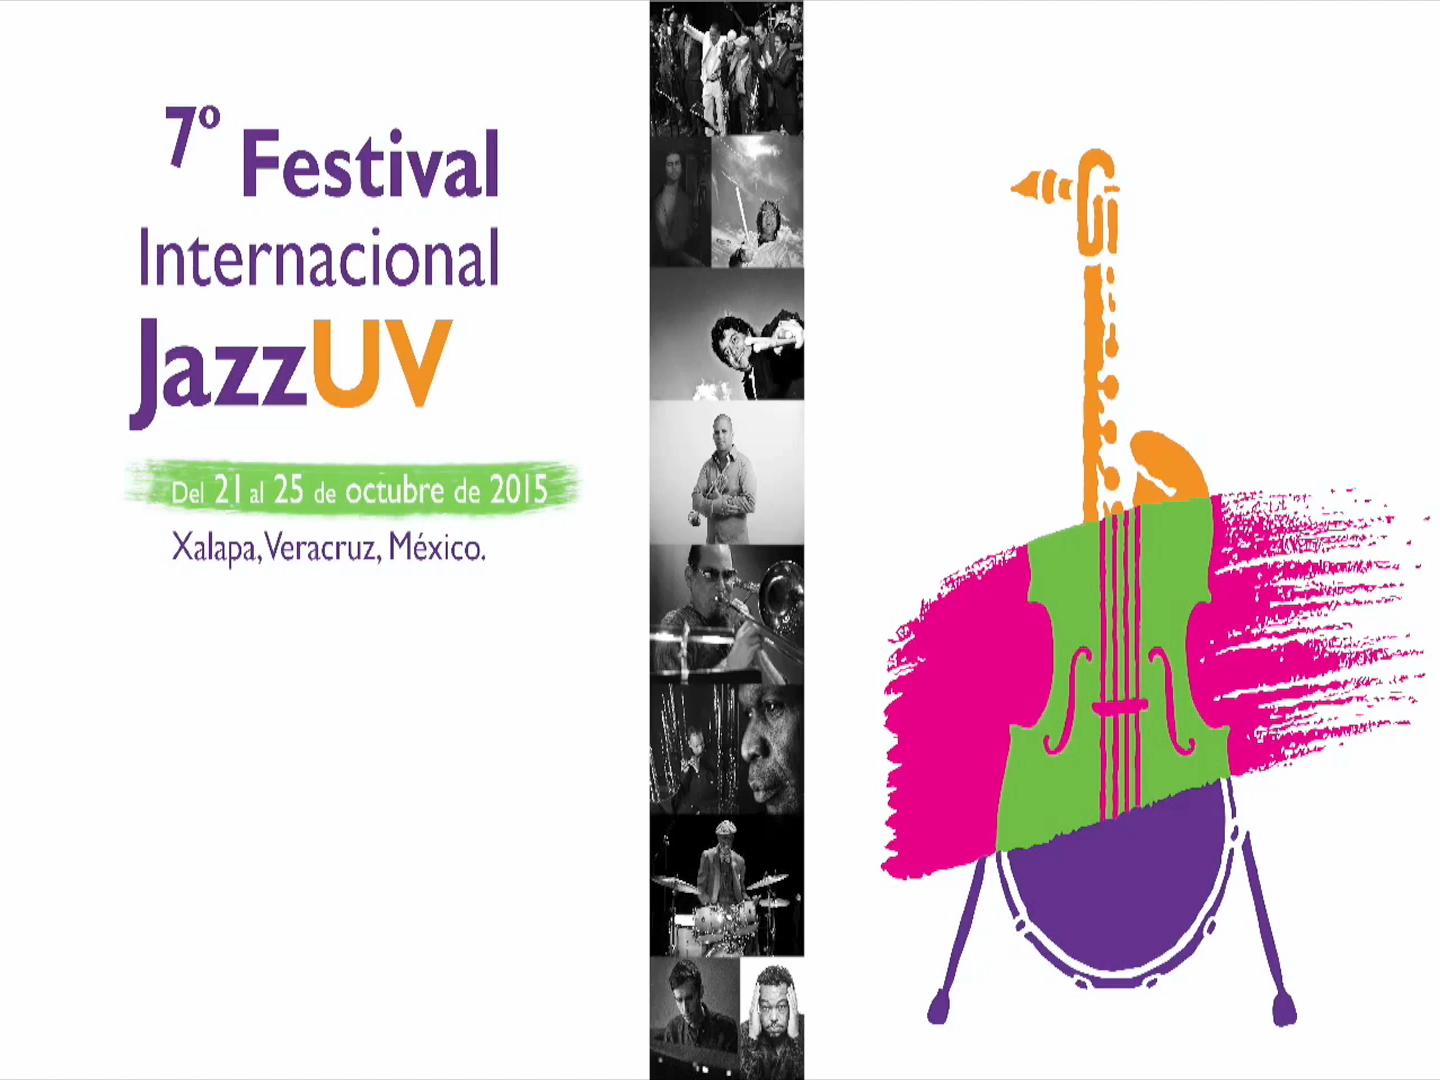 Del 21 al 25 de octubre se realizará el JazzUV en Xalapa